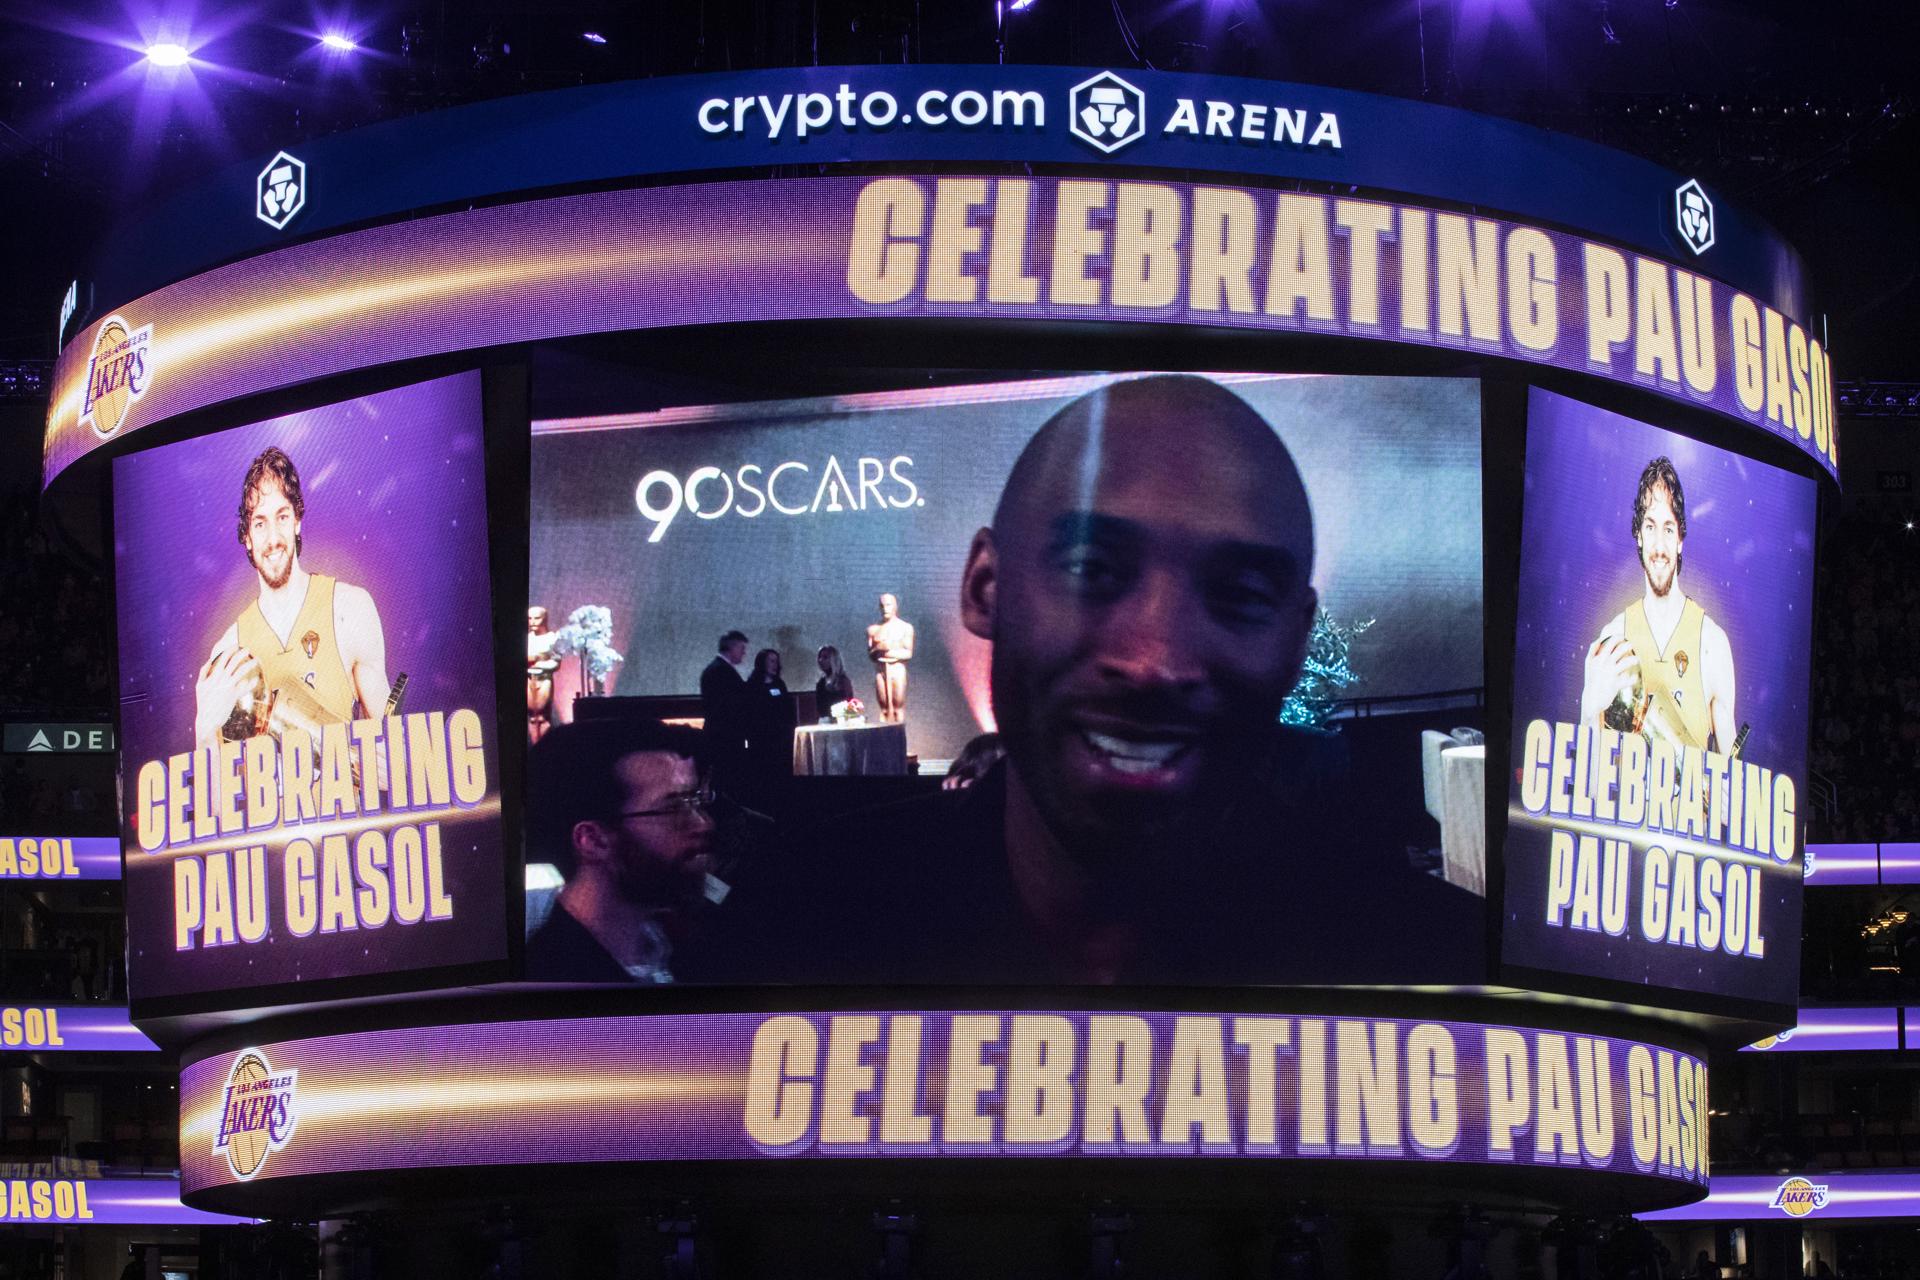 Proyección del video del difunto jugador de la NBA Kobe Bryant durante la ceremonia de retirada de la camiseta de Pau Gasol celebrada el pasado martes, 7 de marzo, en el estadio de los Angeles Lakers el Crypto.com Arena en Los Ángeles, California, EE. UU..